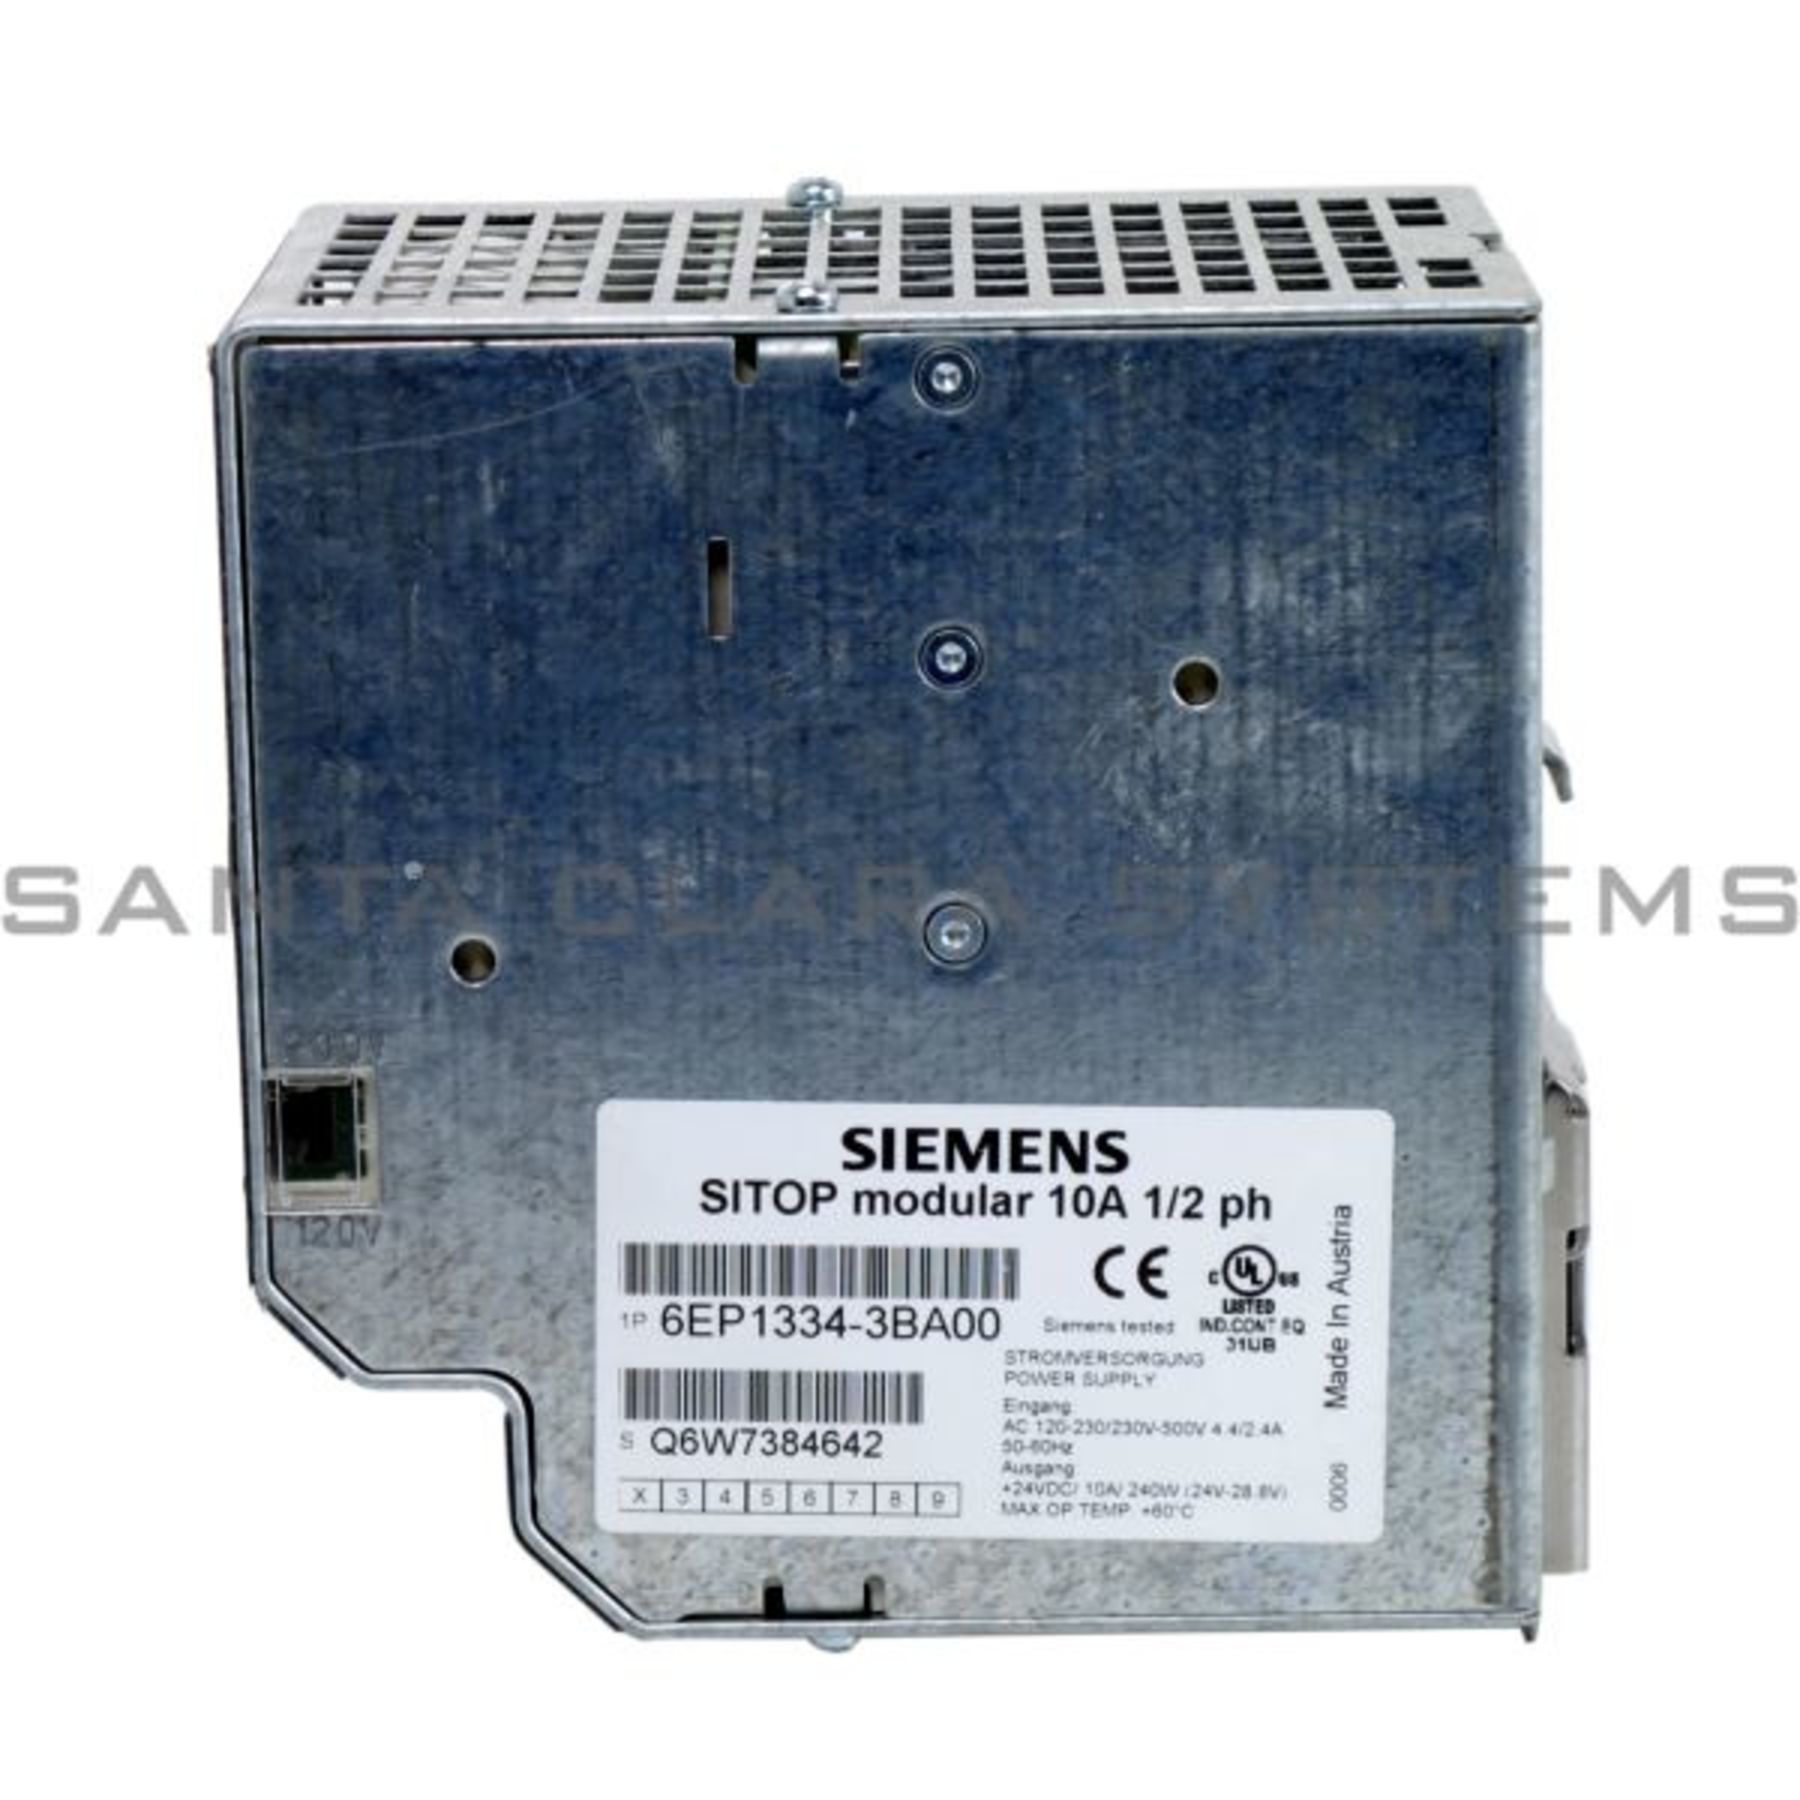 6EP1334-3BA00 Siemens Power Supply | SITOP Modular | 6EP1334-3BA00 